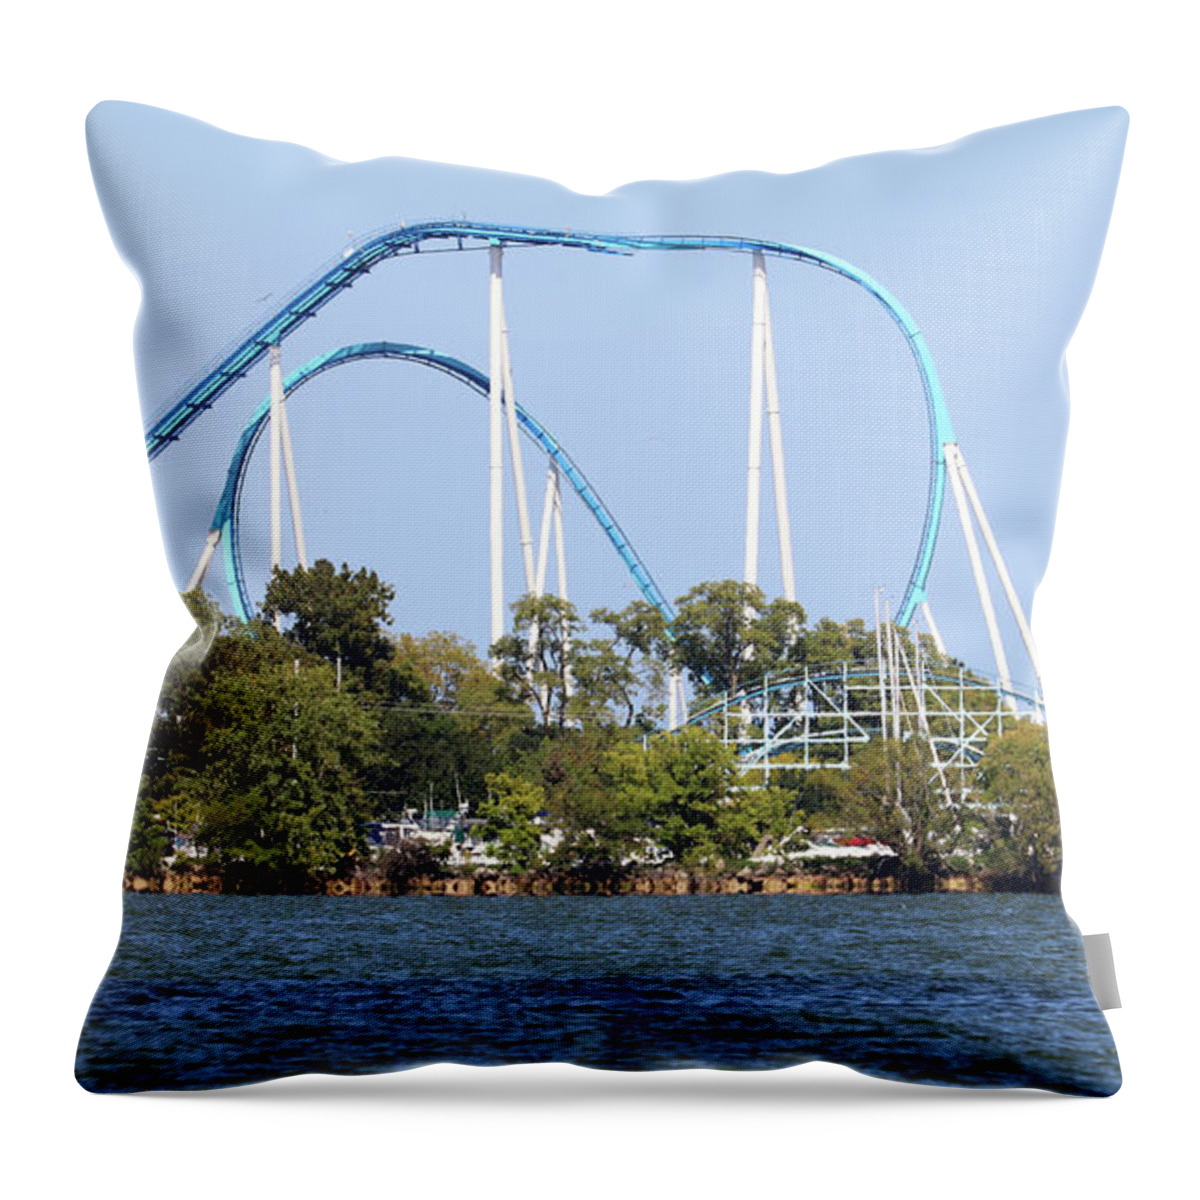 Cedar Point Throw Pillow featuring the photograph Gatekeeper Cedar Point 0472 by Jack Schultz